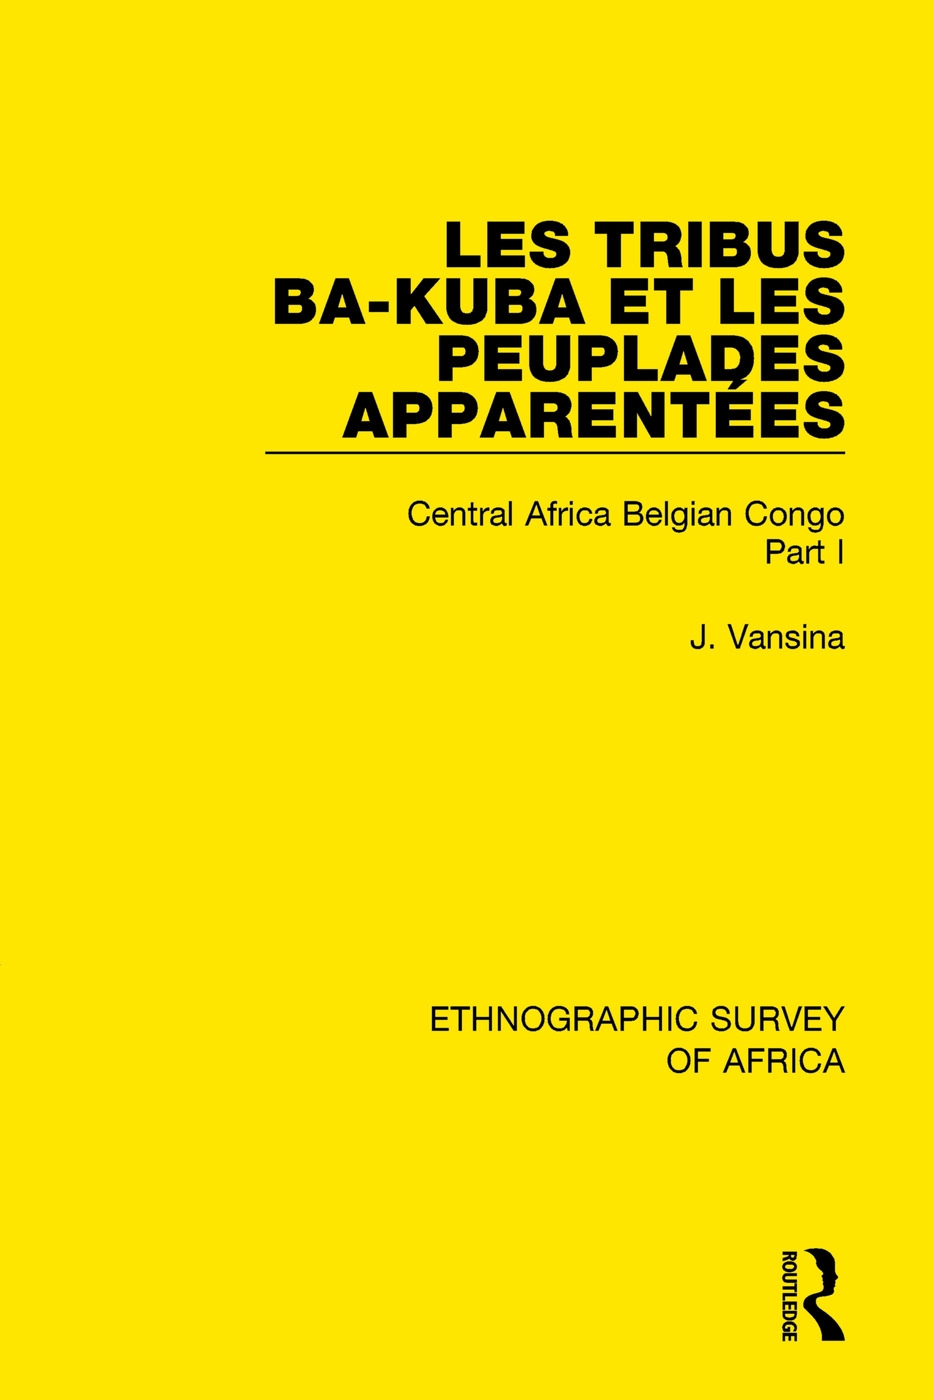 Les Tribus Ba-Kuba Et Les Peuplades Apparentées: Central Africa Belgian Congo Part I